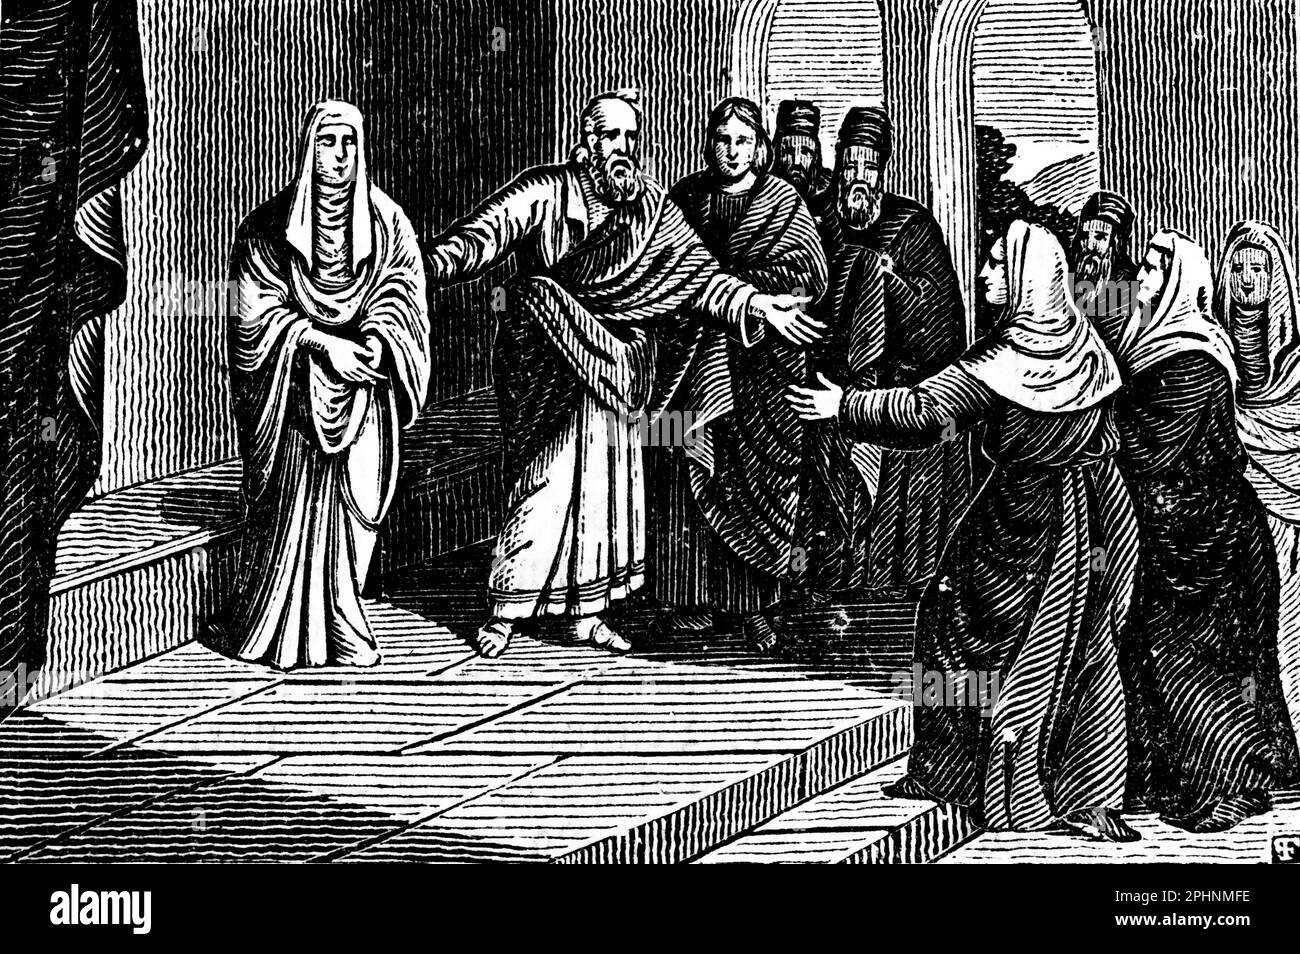 Aeneas est guéri par Petrus et Tabitha est élevé des morts et conduit aux disciples, actes 9:36, Apôtres, Nouveau Testament, bible 1831, rapport d'illustration Banque D'Images